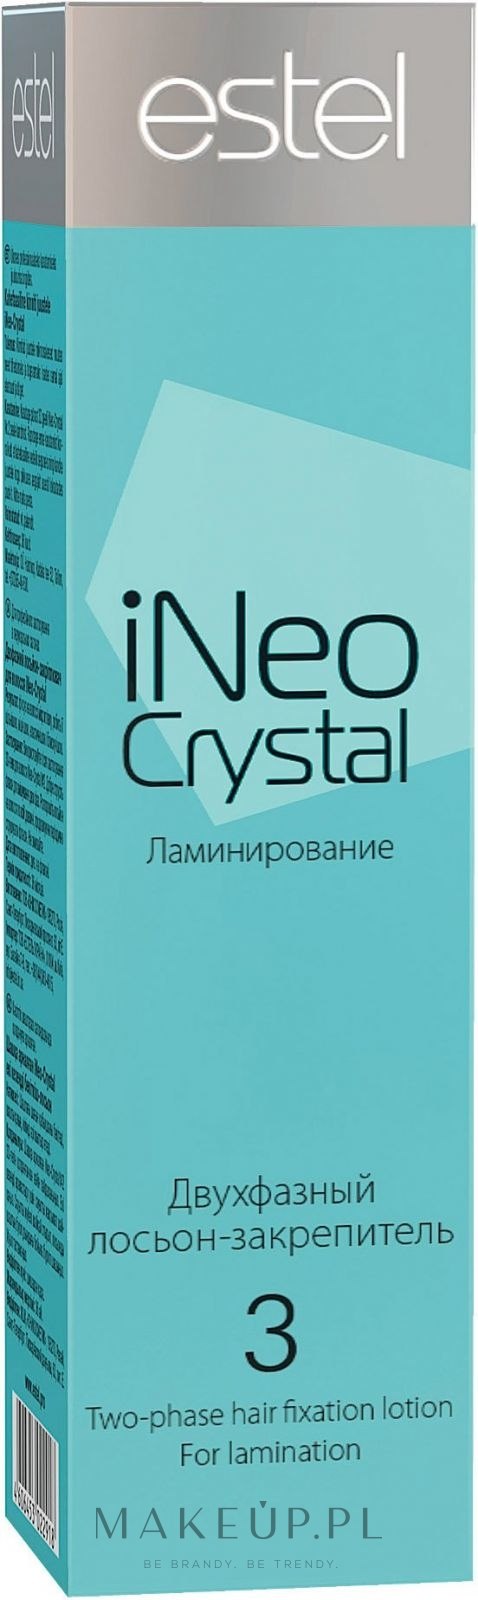 ineo crystal szampon cena